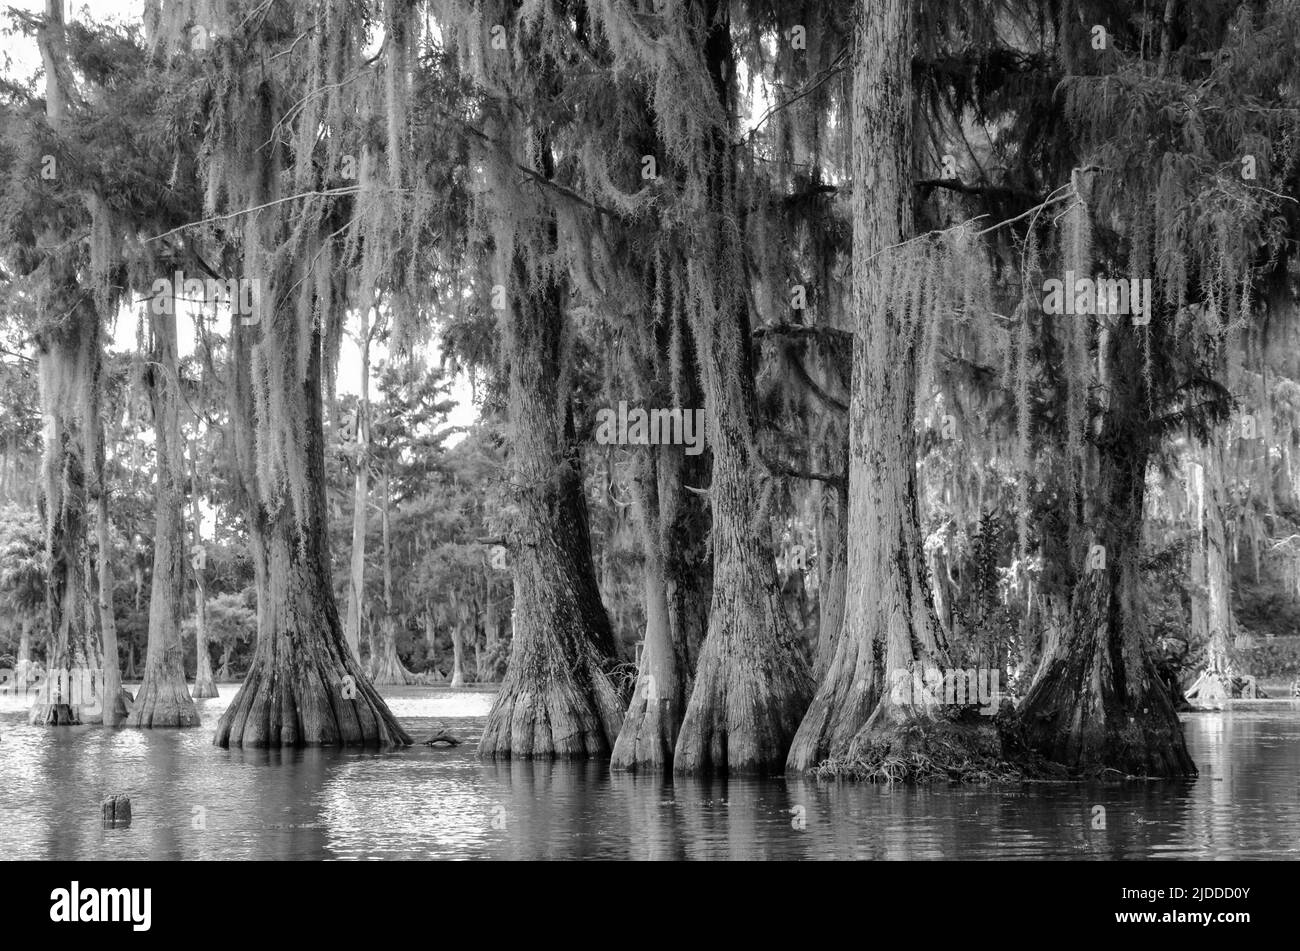 Una ingeniosa foto en blanco y negro de cipreses en musgo español en Merritt's Mill Pond, Marianna, Florida, Estados Unidos Foto de stock